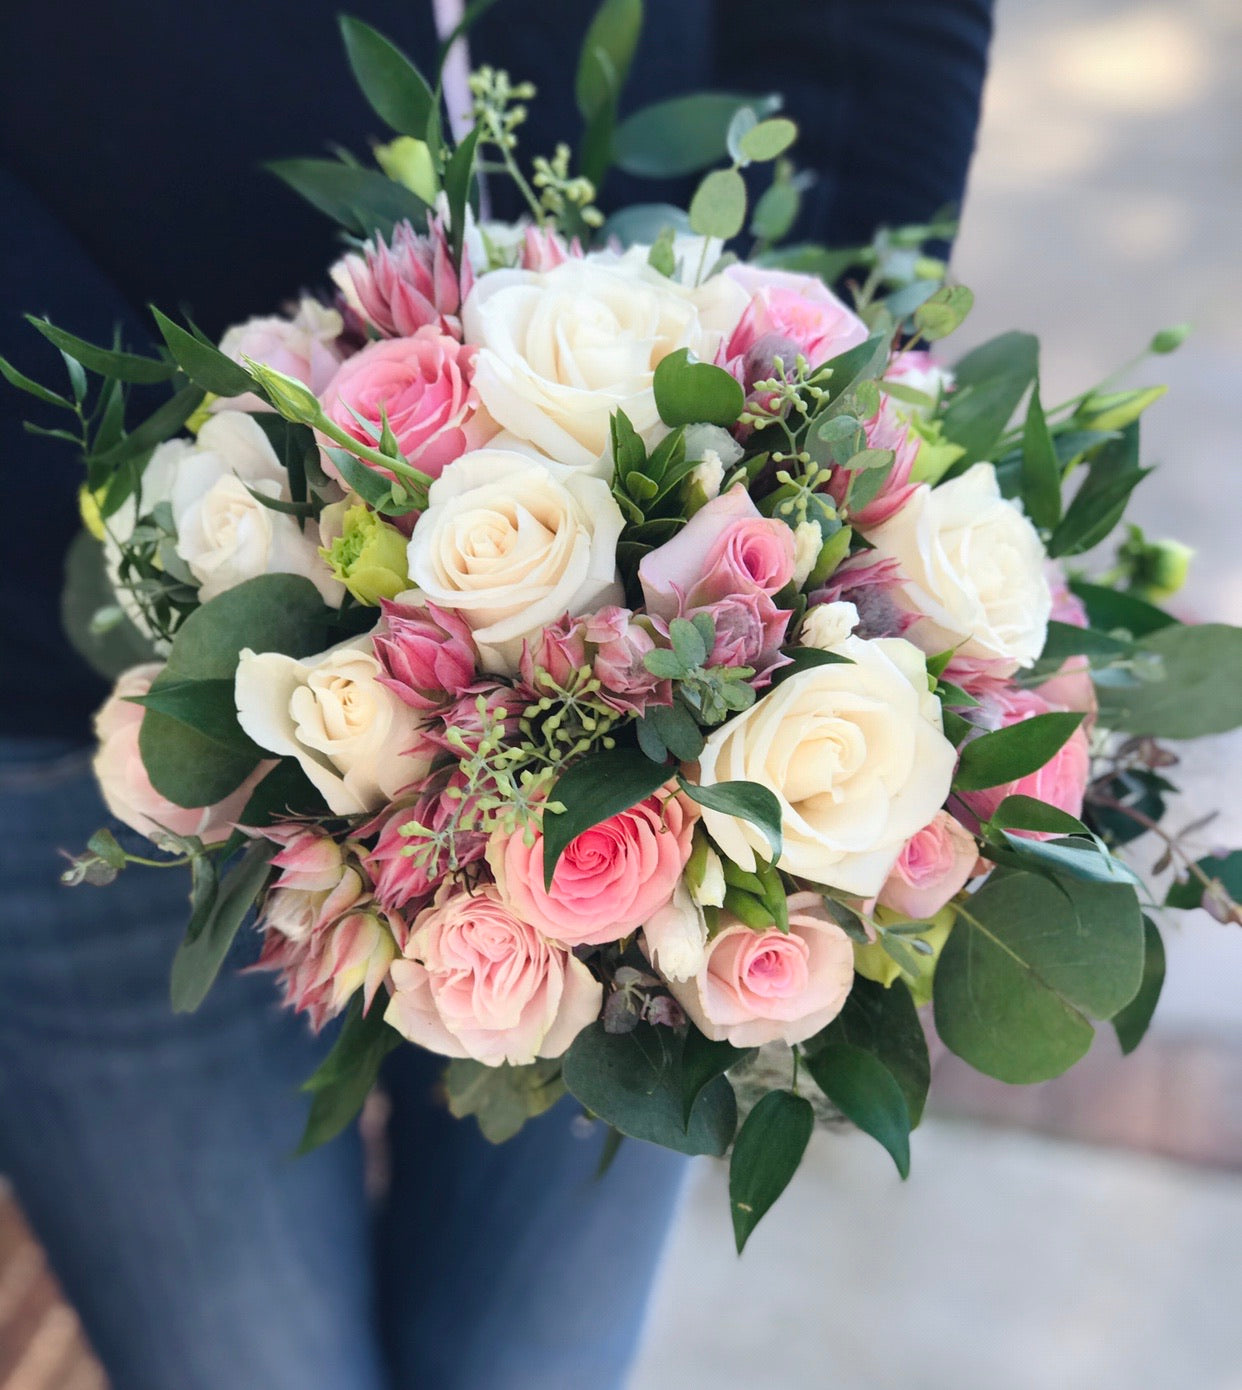 “My big day” bridal bouquet